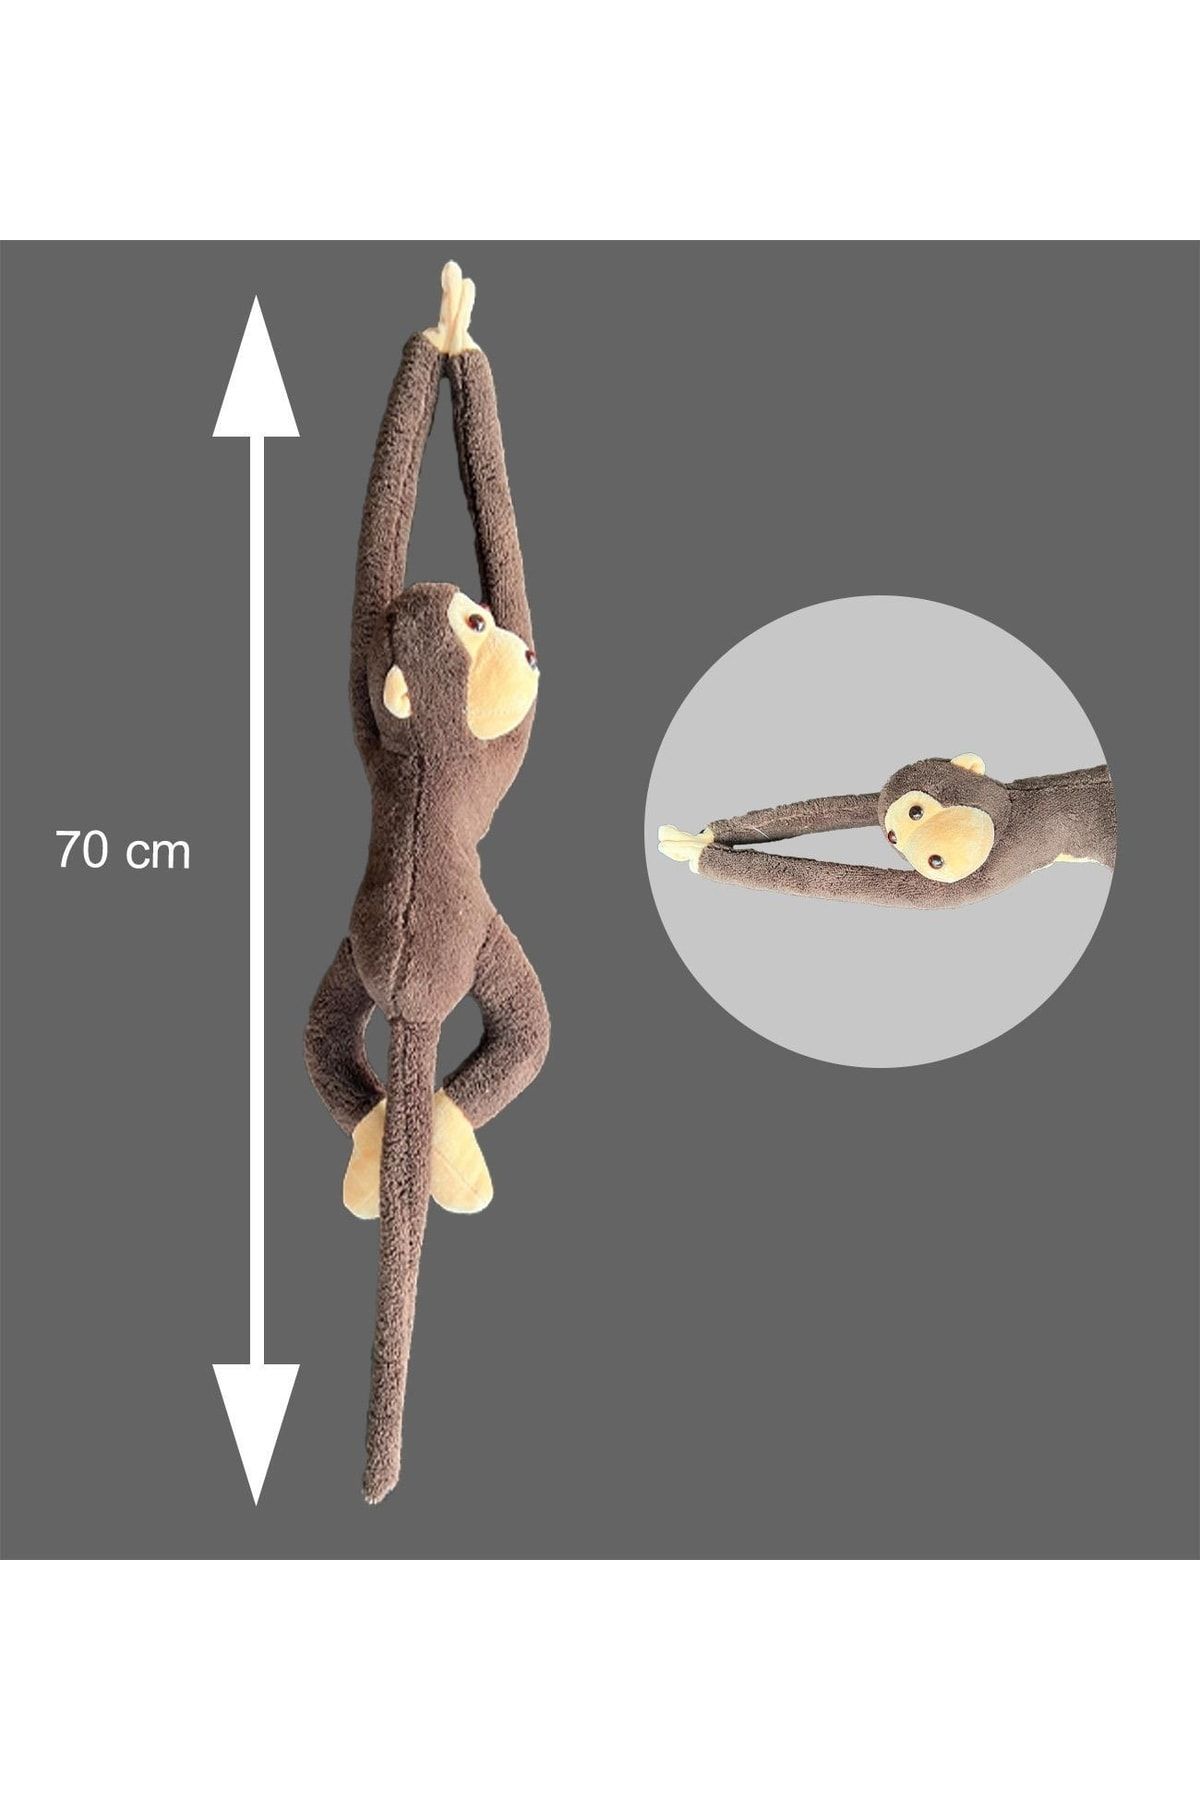 Sole Peluş Maymun, Elleri Yapışabilen Uyku Ve Oyun Arkadaşı -70 Cm